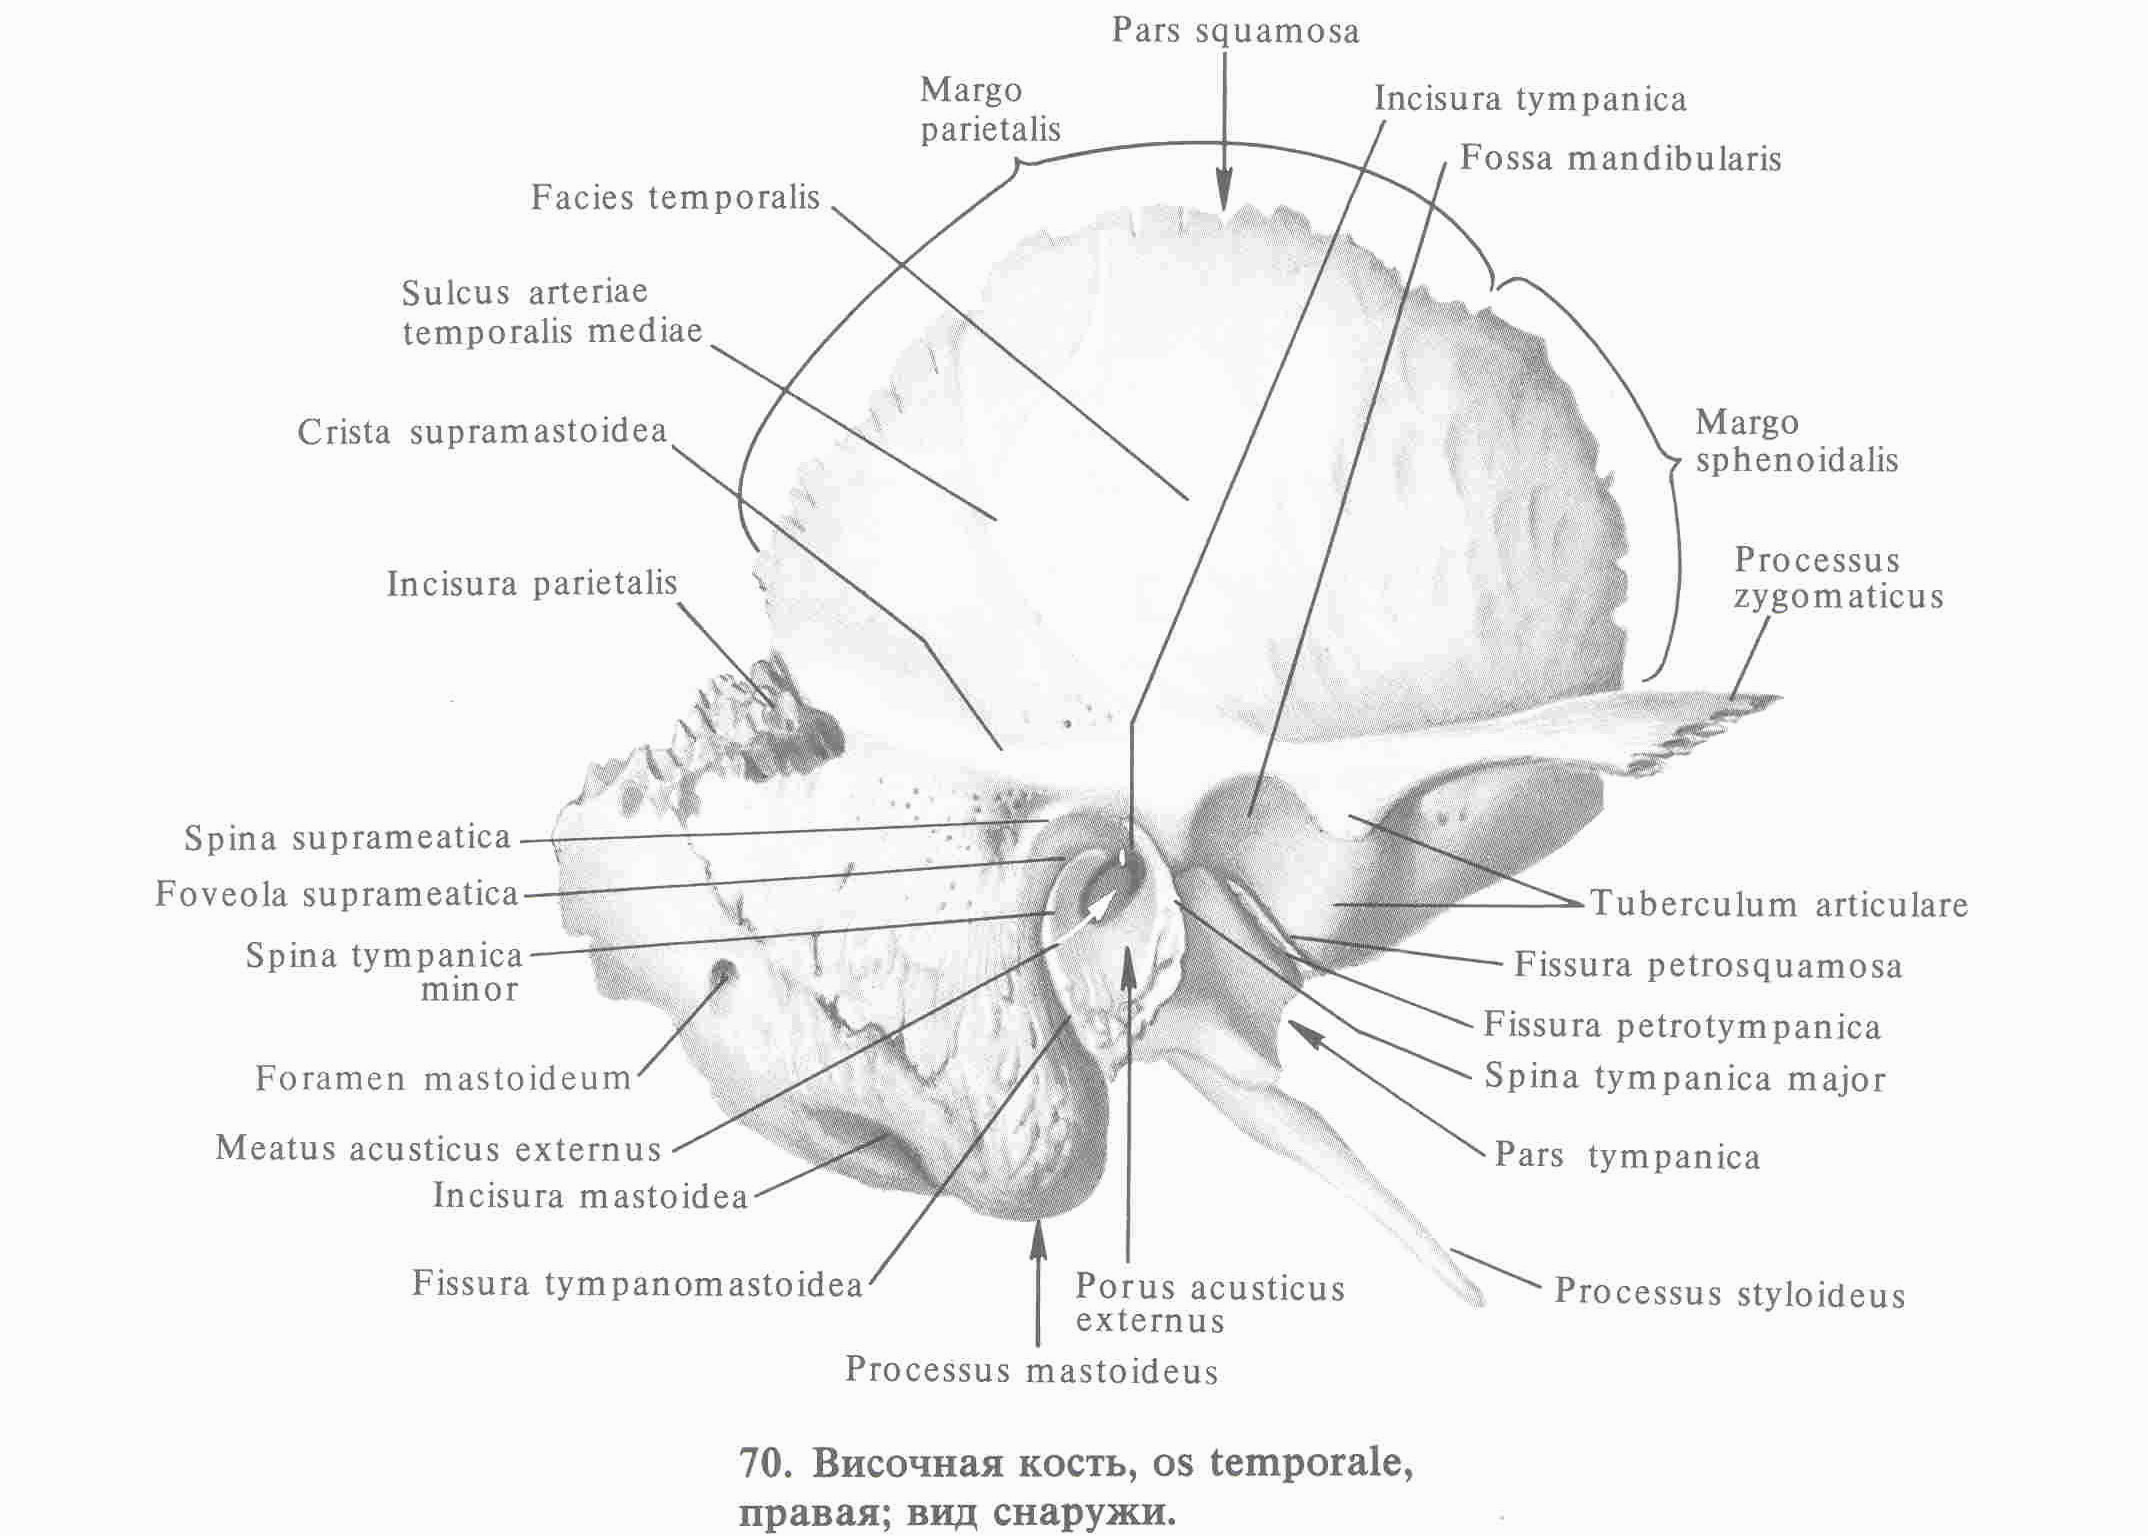 Изменения височной кости. Височная кость строение Синельников. Височная кость анатомия каменисто барабанная щель. Височная кость анатомия Синельников. Борозда средней височной артерии височной кости.